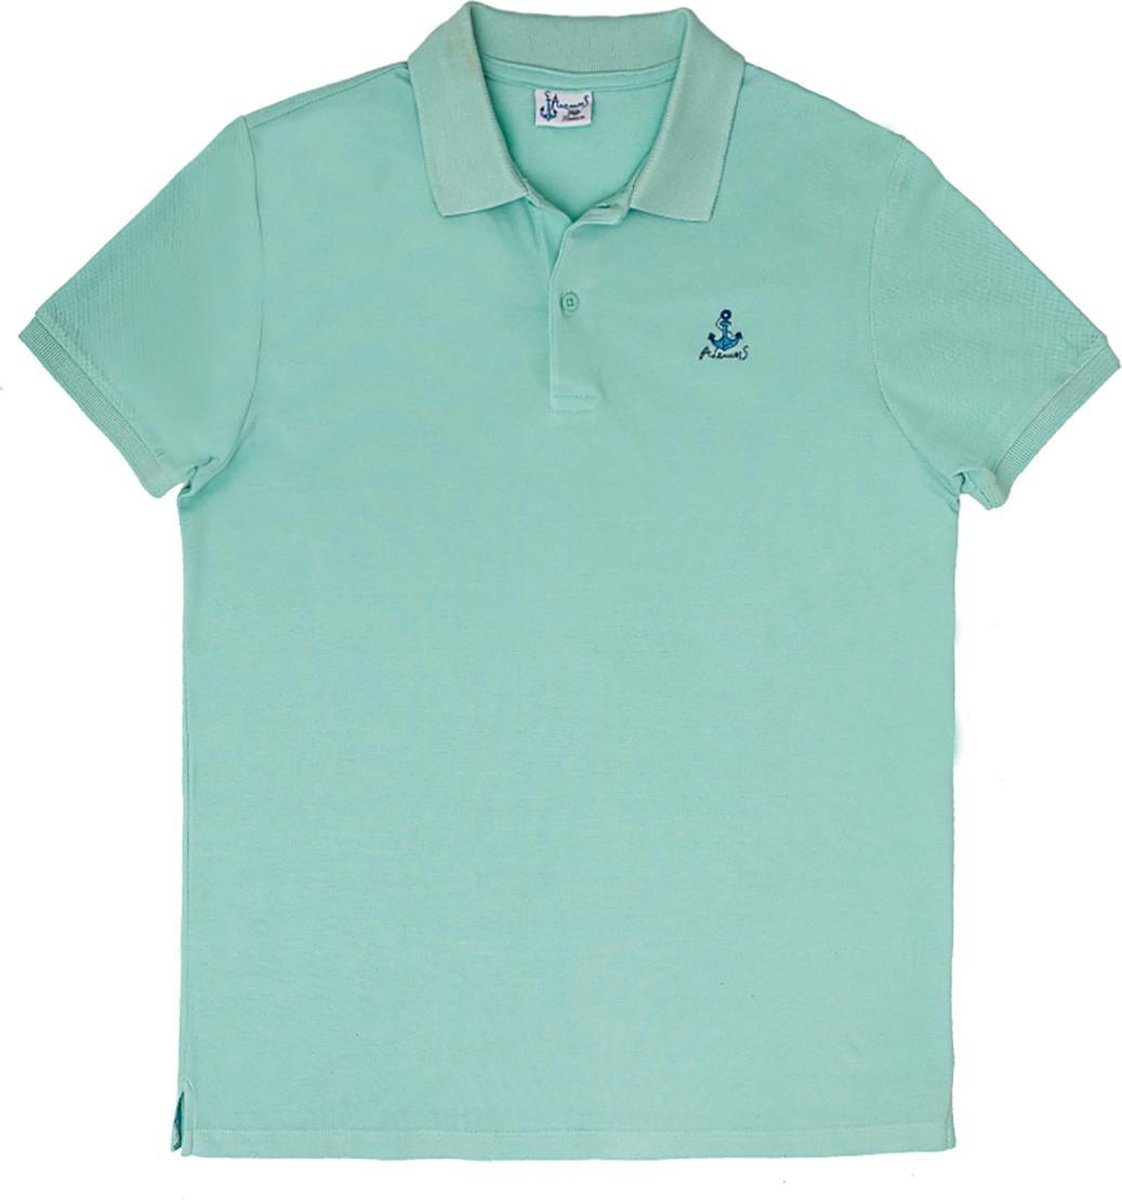 Biggdesign T Shirt Heren - Poloshirt - Tennis Shirt - Golfshirt - Mint - Maat XL